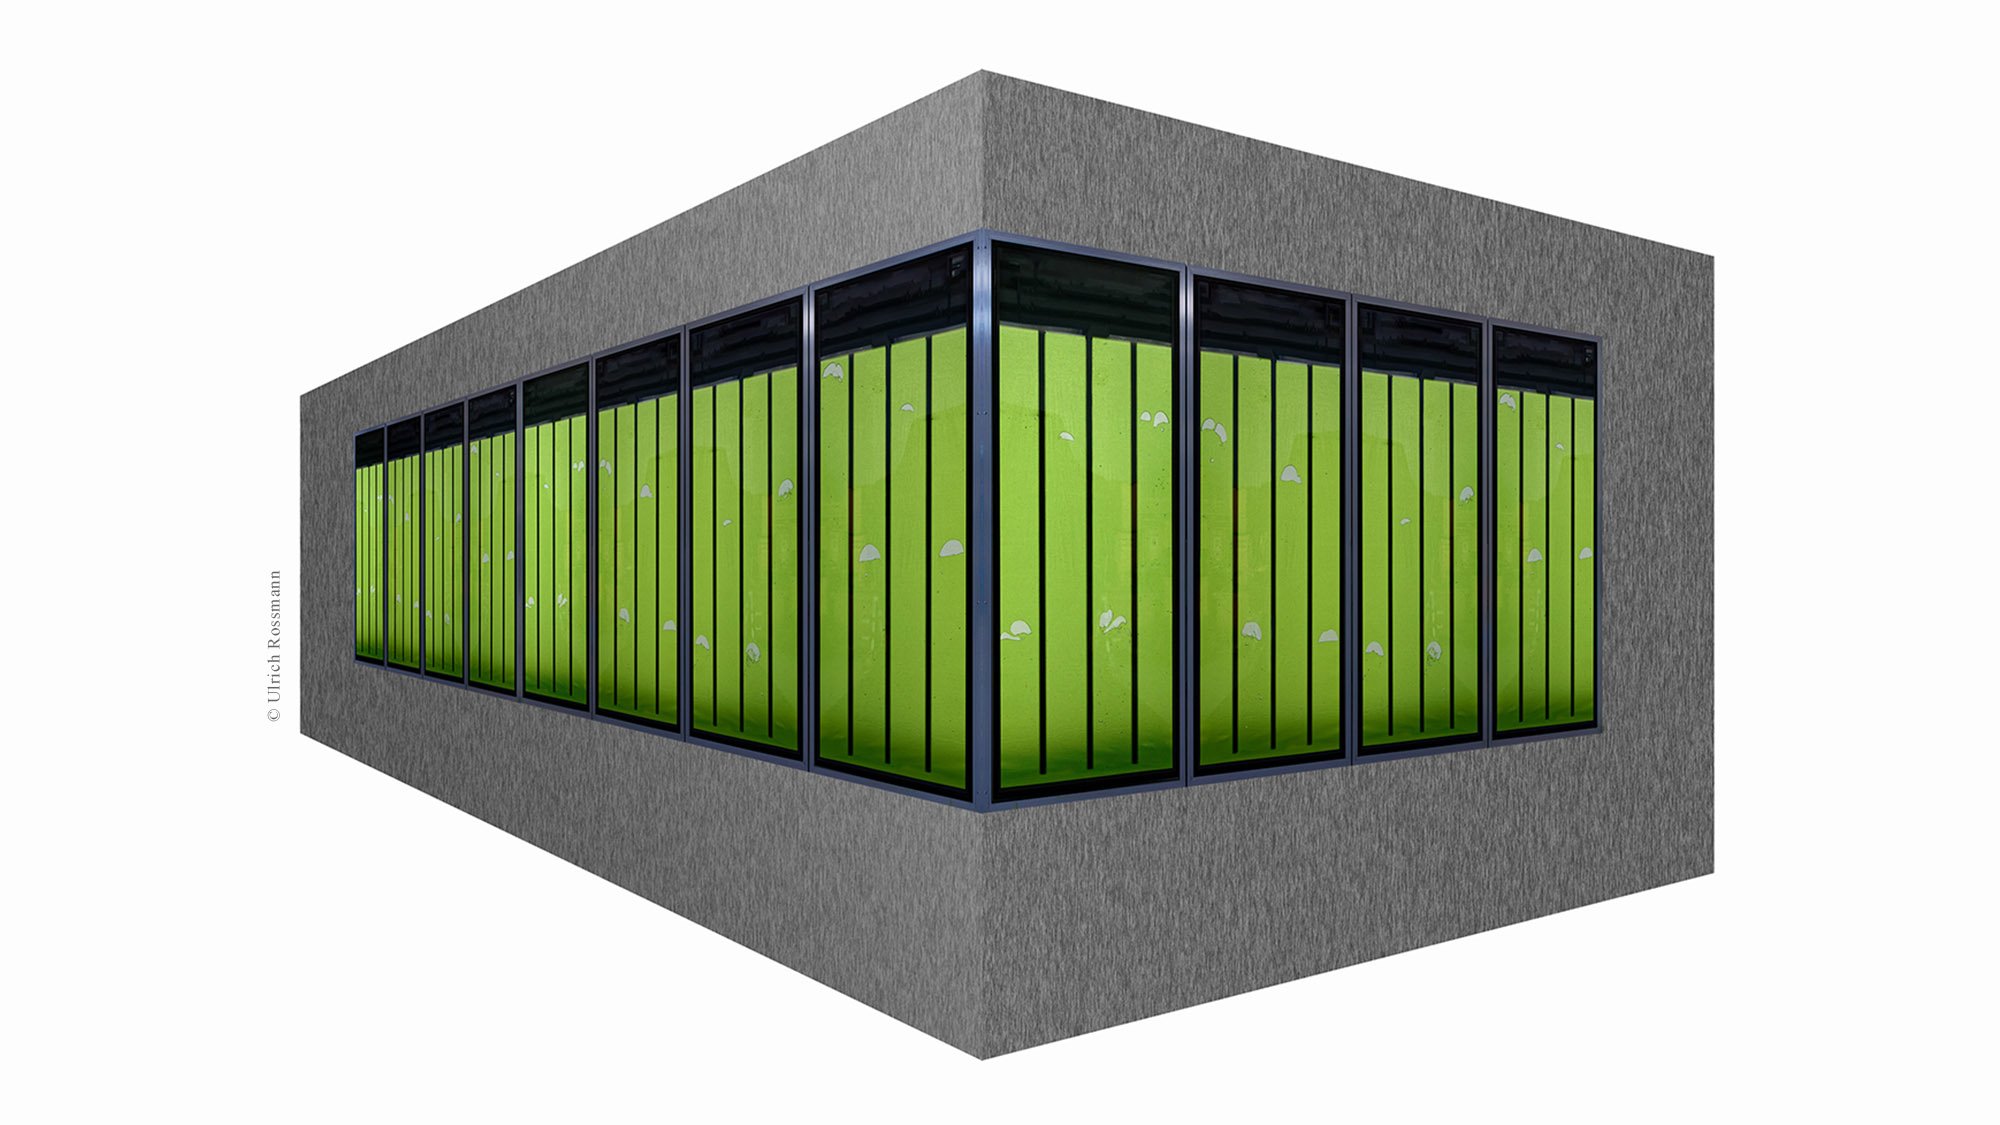 Die Bioenergiefassade soll sich als skalierbares Element zur Fassadengestaltung etablieren, um geschlossene Stoffkreisläufe auf Gebäude- und Stadtteilebene umzusetzen.